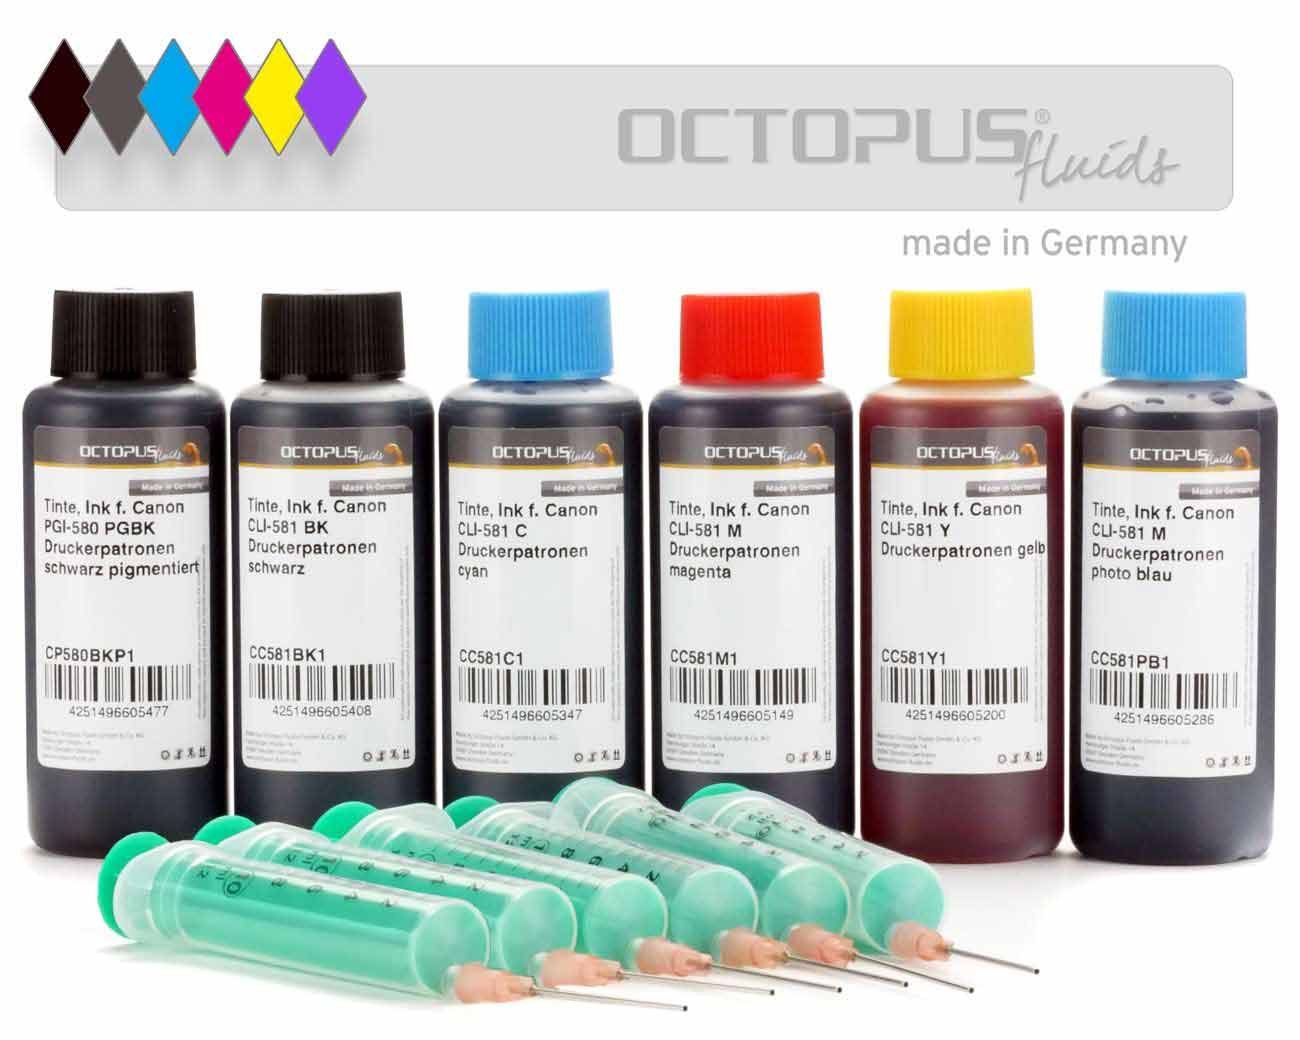 OCTOPUS Fluids Druckertinten für Canon PGI-580 und CLI-581 Druckerpatronen, 6 Farben Nachfülltinte (für Canon, 6x 100 ml)